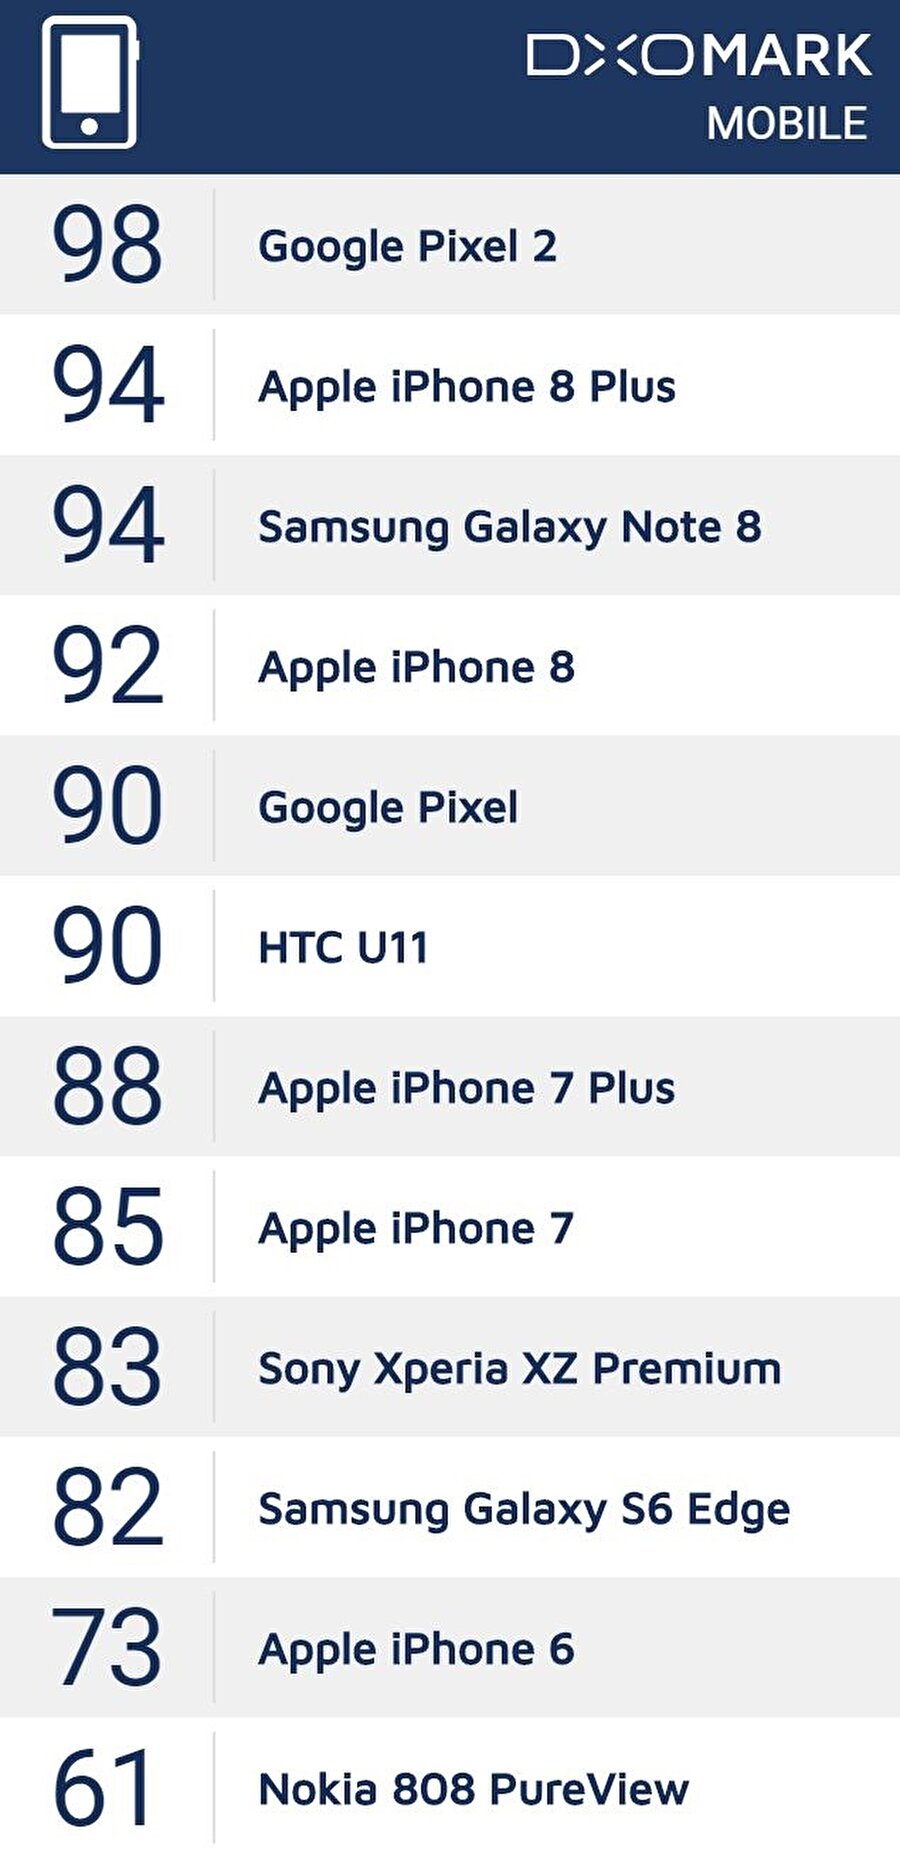 Son değerlendirmeler sonucunda listenin en tepesine yerleşen Pixel 2'yi, iPhone 8 Plus, Galaxy Note 8 ve iPhone 8 takip ediyor. Akabinde liste Pixel'in önceki versiyonu, U11 ve iPhone 7 Plus şeklinde devam ediyor. 